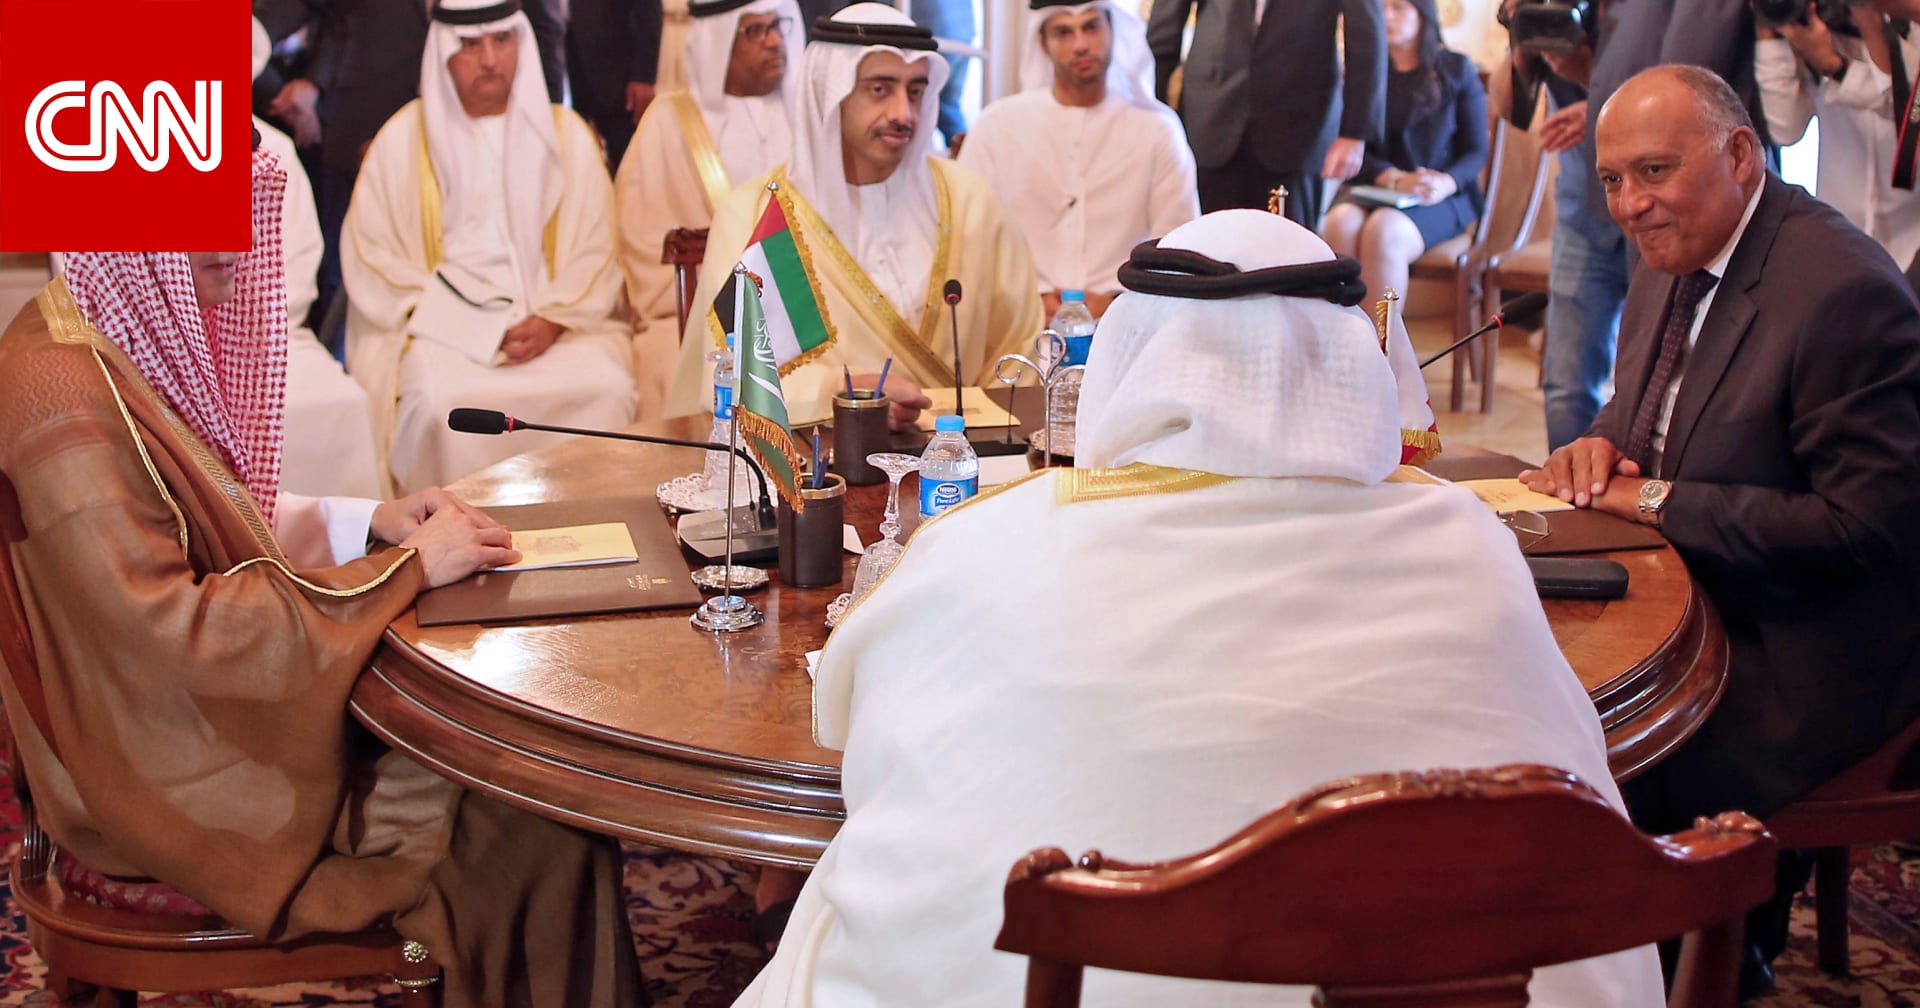 قطر تخاطب مجلس الأمن الدولي لحل الأزمة مع السعودية والإمارات والبحرين ومصر - CNN Arabic